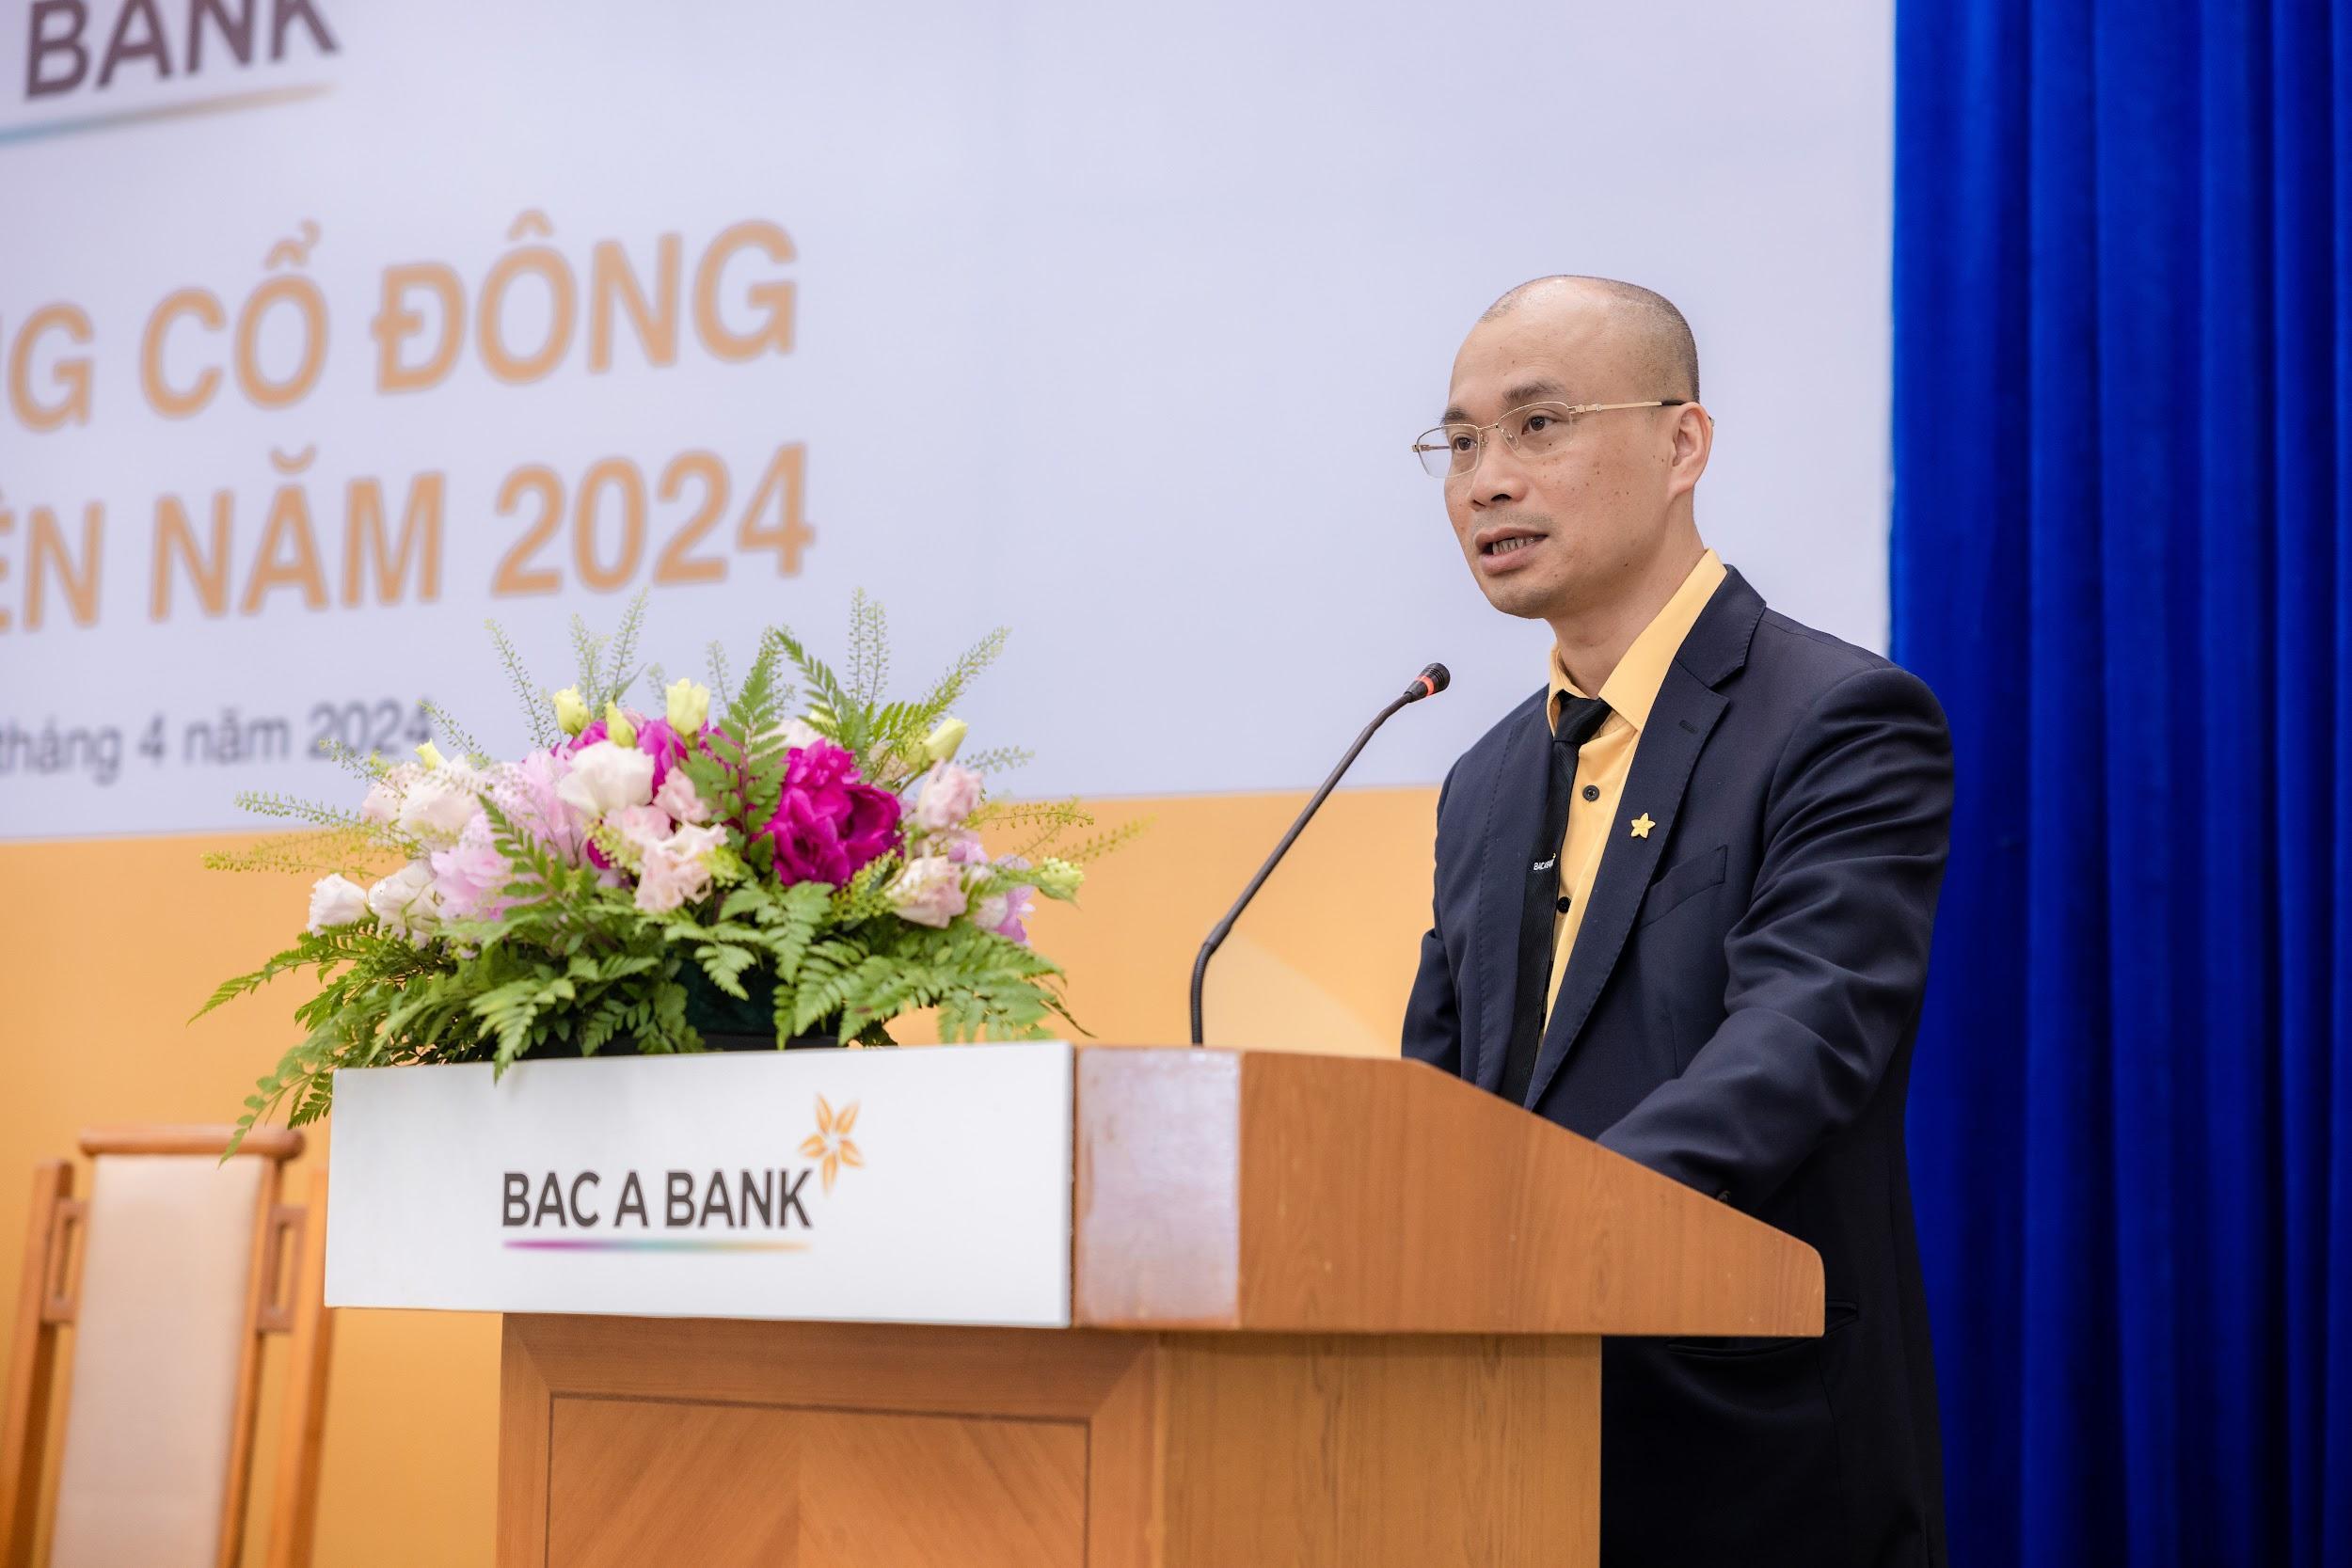 BAC A BANK ra mắt thành viên HĐQT nhiệm kỳ mới với mục tiêu tăng trưởng - 3